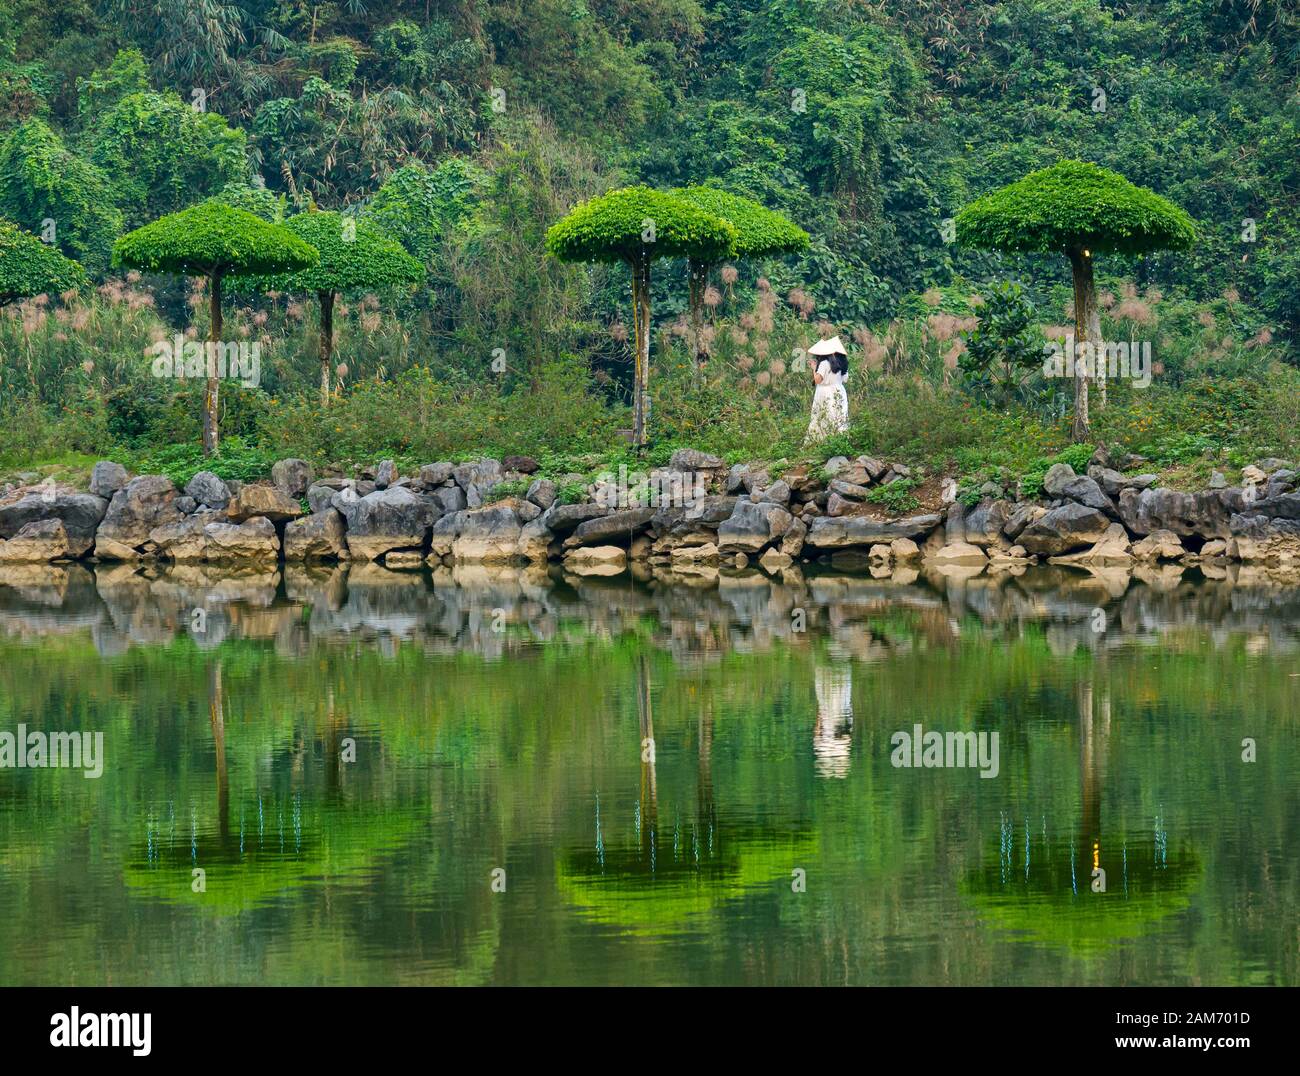 Femmes portant des chapeaux coniques reflétés dans la rivière, Thung Nham Bird Park, Tam Coc, Ninh Binh, Vietnam Banque D'Images